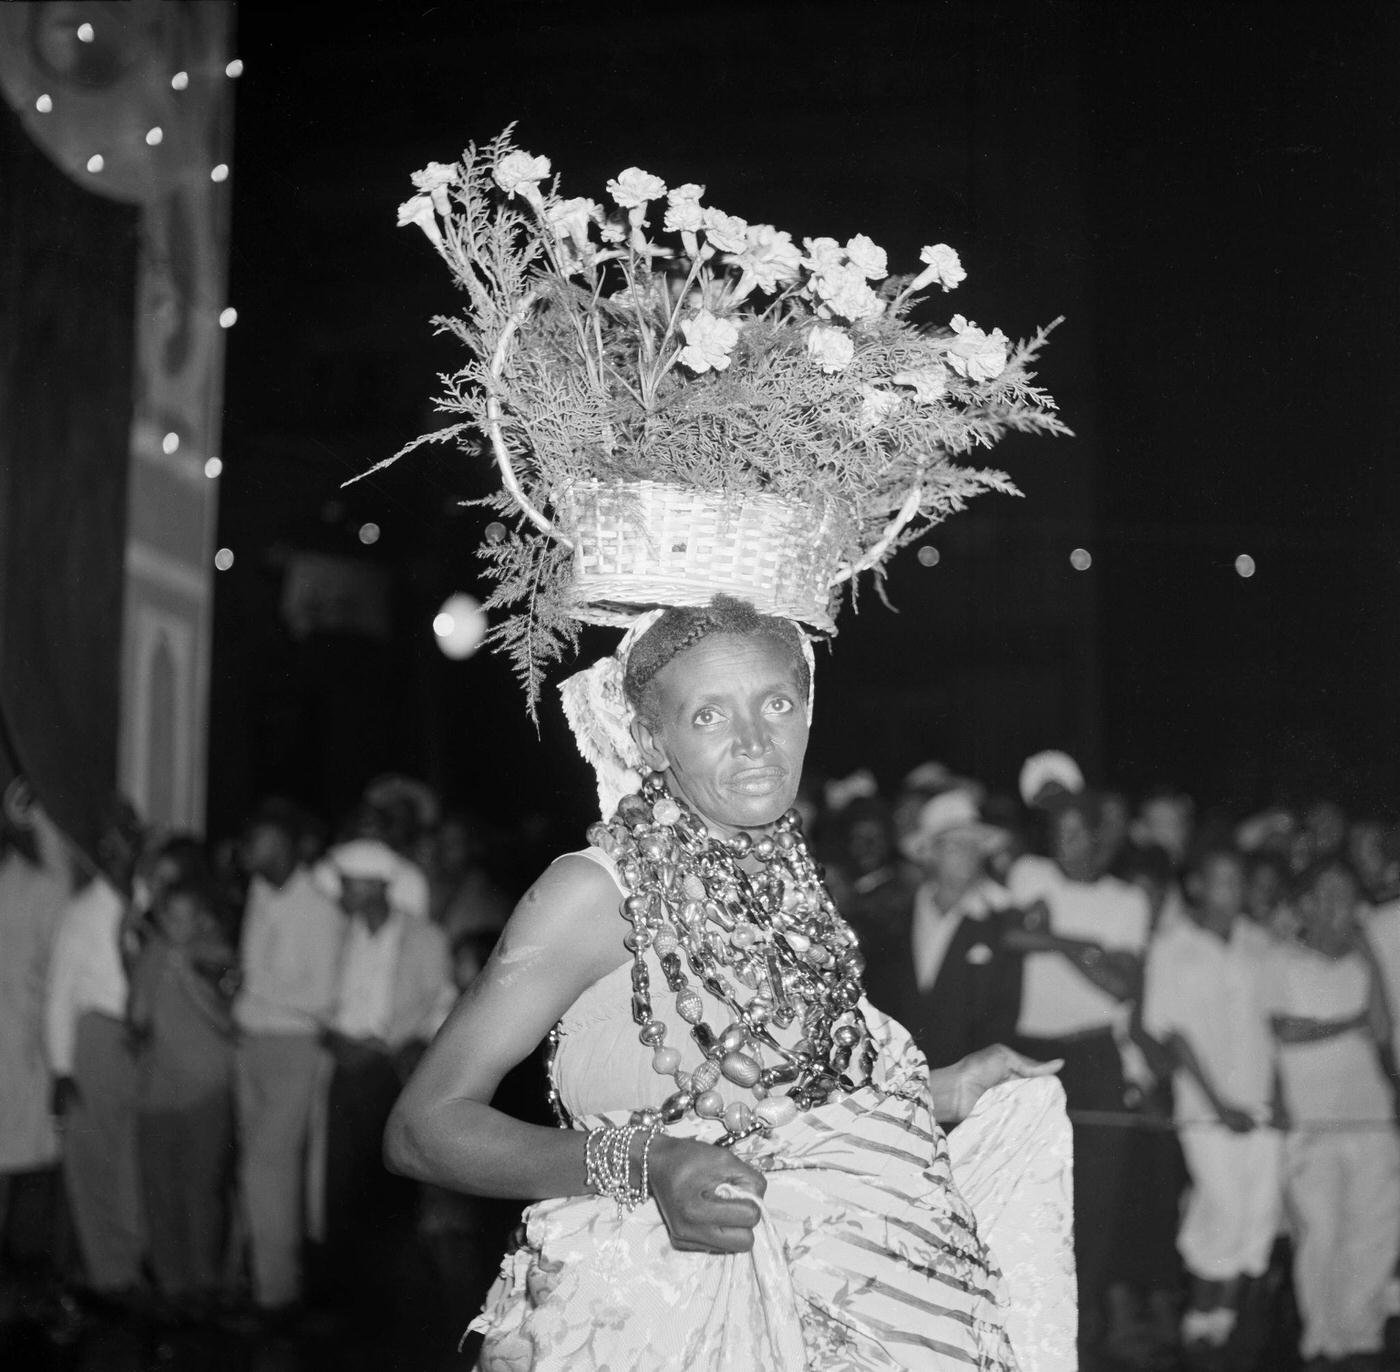 Reveler dances in the Carnival parade in Rio de Janeiro. 1953